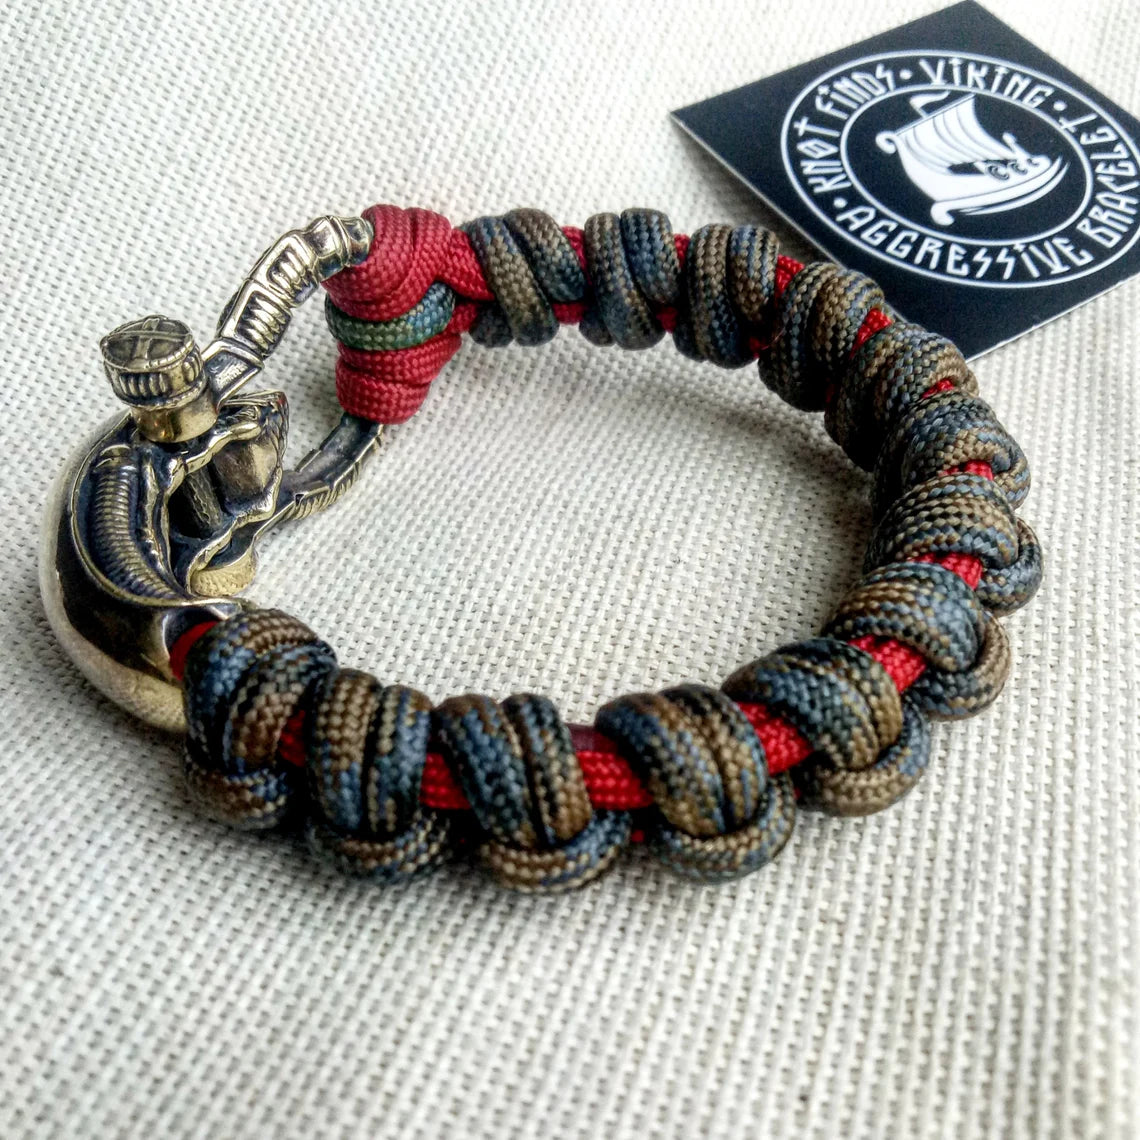 Paracord bracelet "ALIEN". Celtic knot and parachute cord.